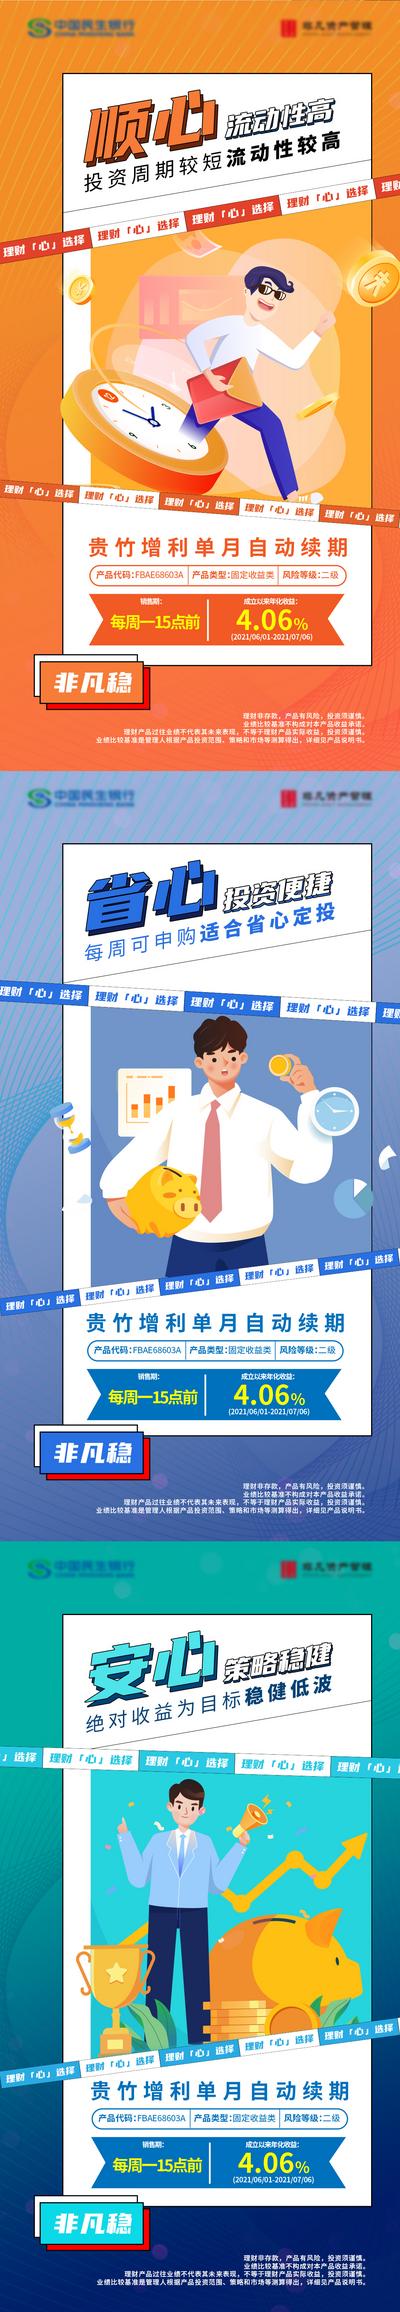 南门网 广告 海报 银行 投资 财富 回报 理财 系列 插画 品质